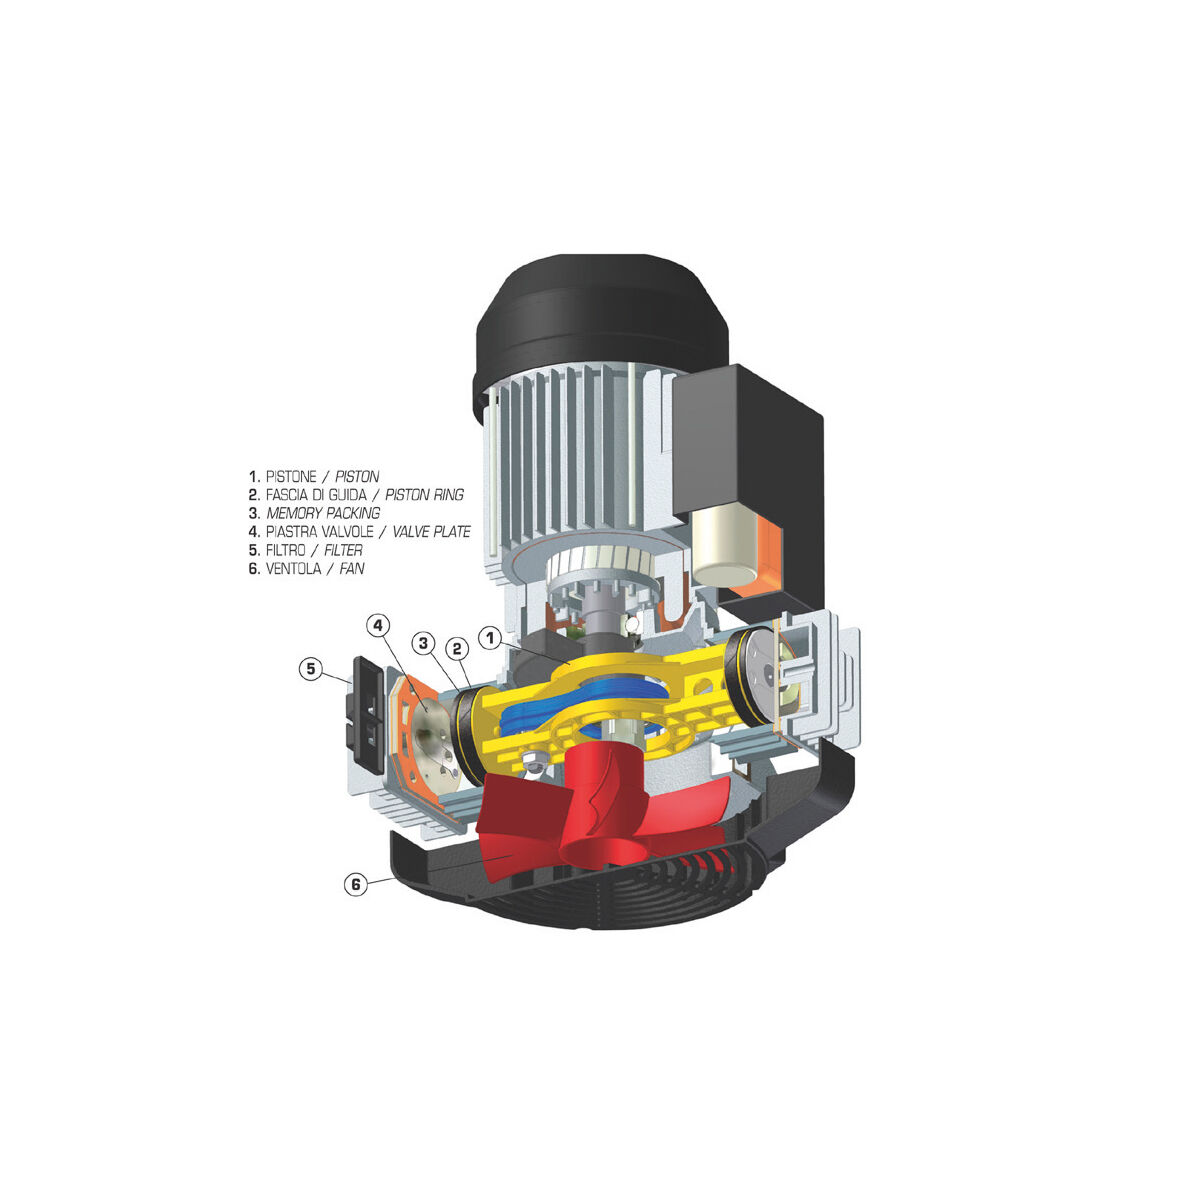 Kompressor, 90 l - 4 kW 3 Phasen, 460 Liter/Min., ölgeschmiert